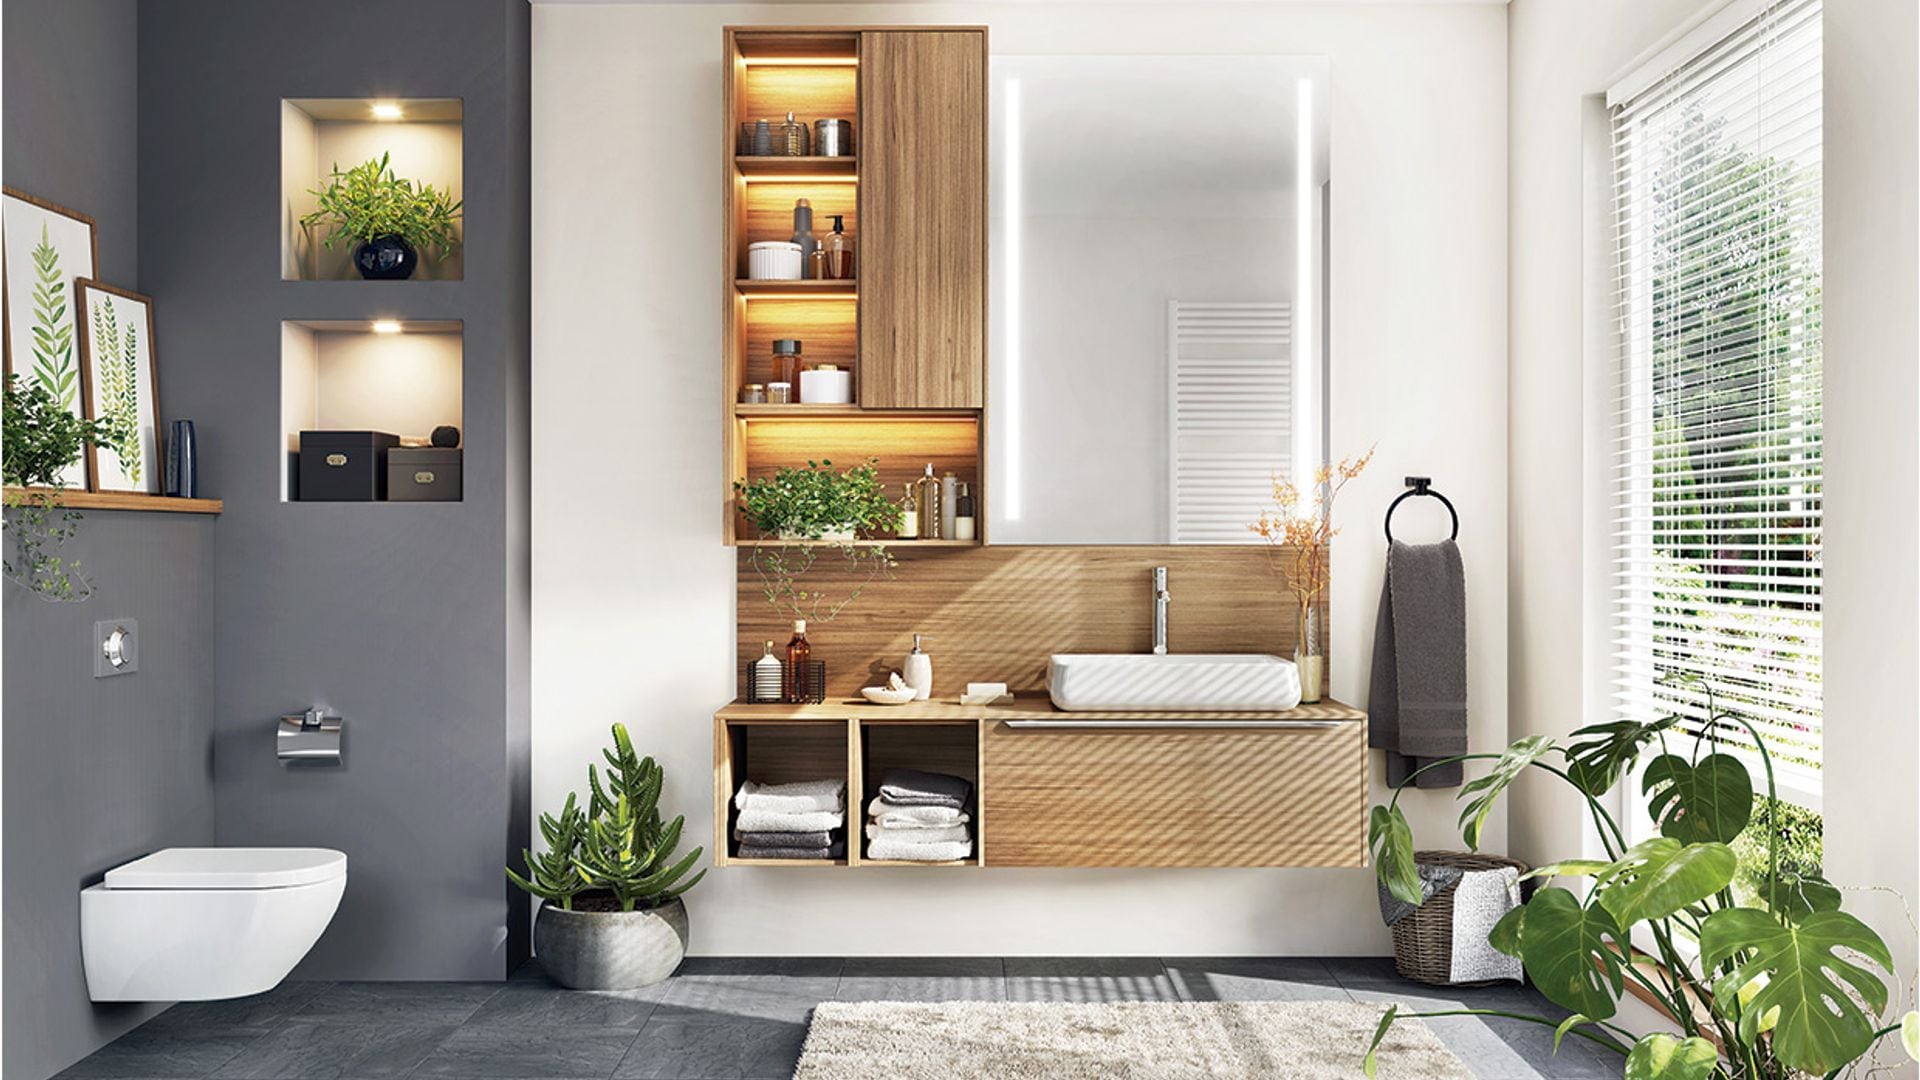 Organiza tu cuarto de baño sin perder funcionalidad ni estilo